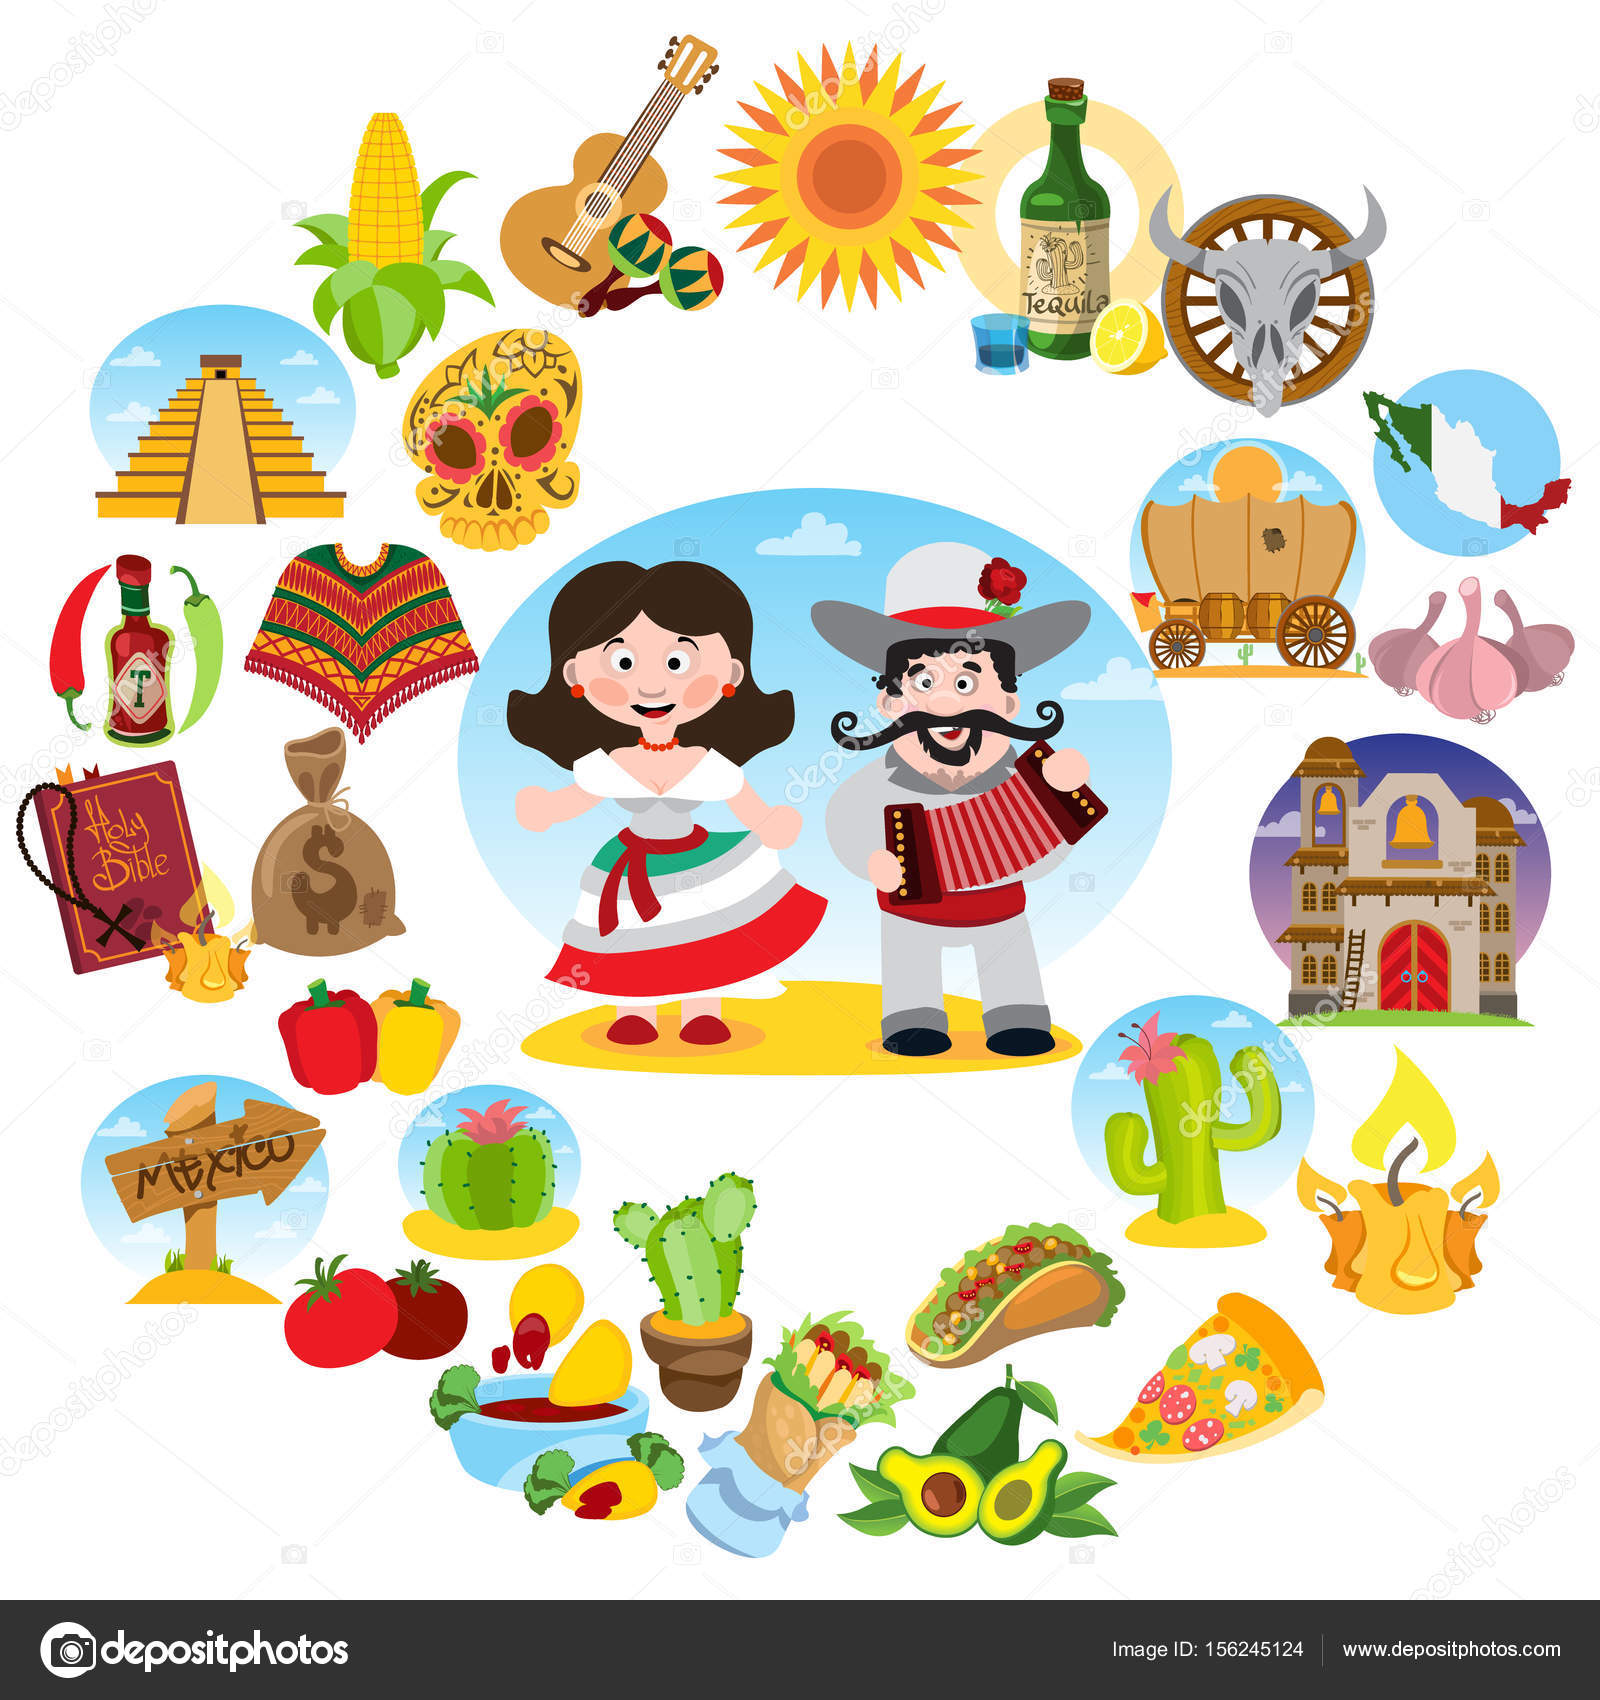 140 ilustraciones de stock de Tradiciones mexicanas | Depositphotos®